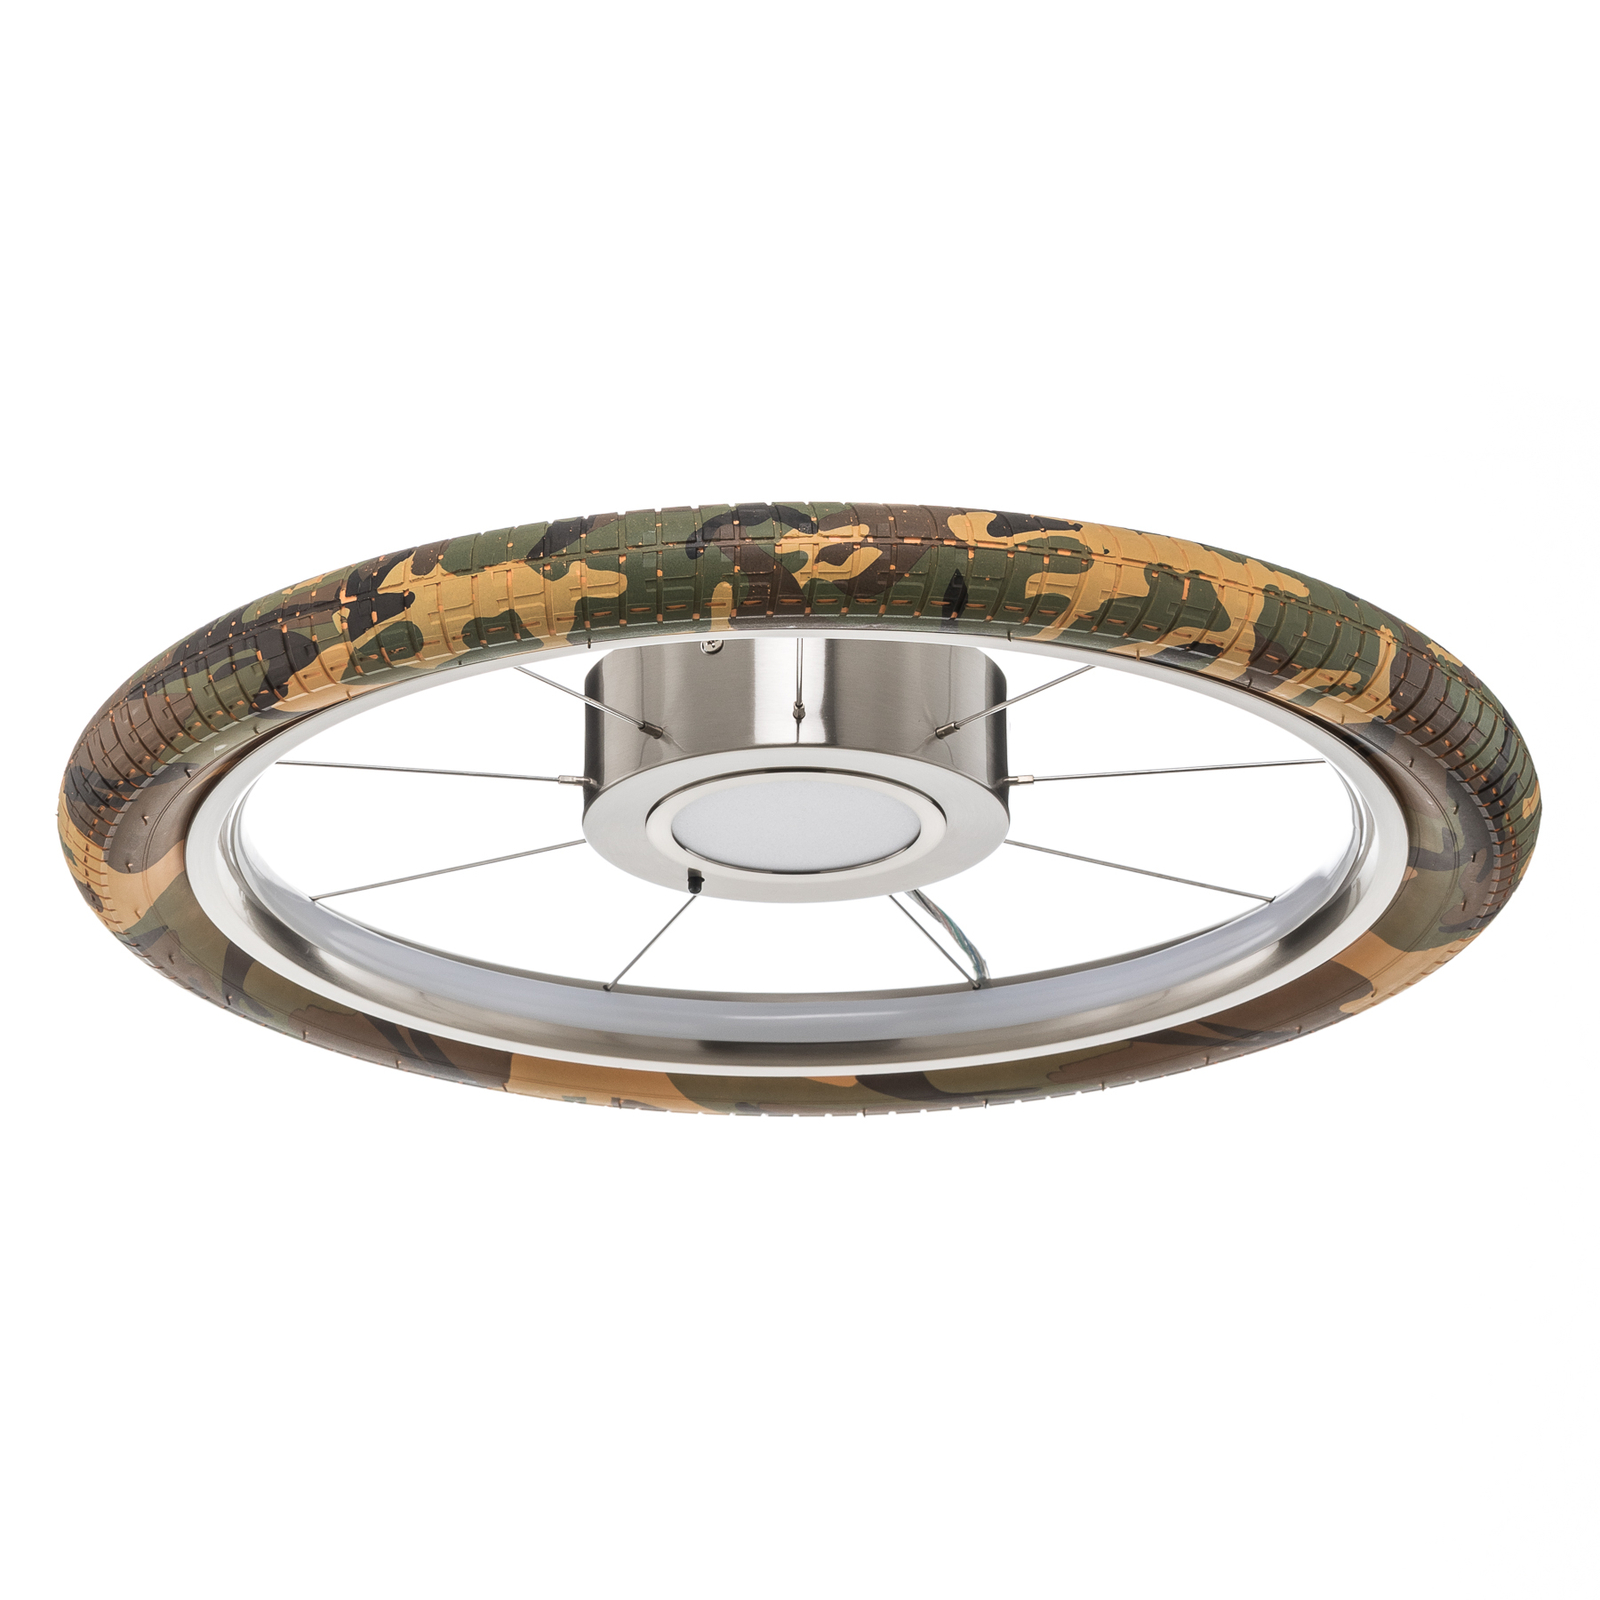 LED plafondlamp Wheel, RGB, camouflage